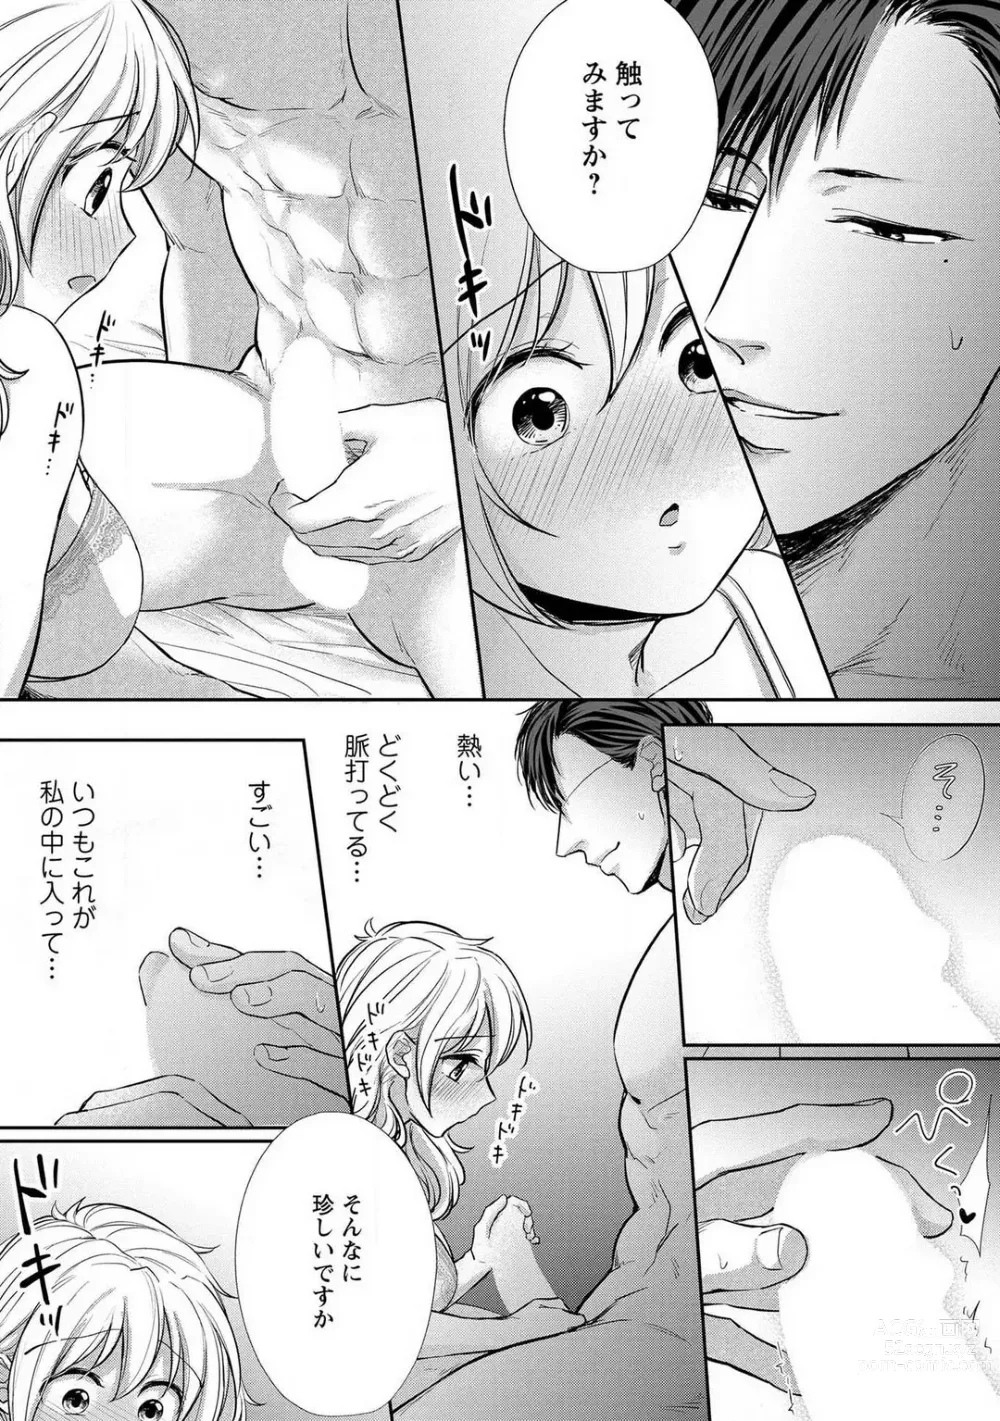 Page 144 of manga Pyuuru